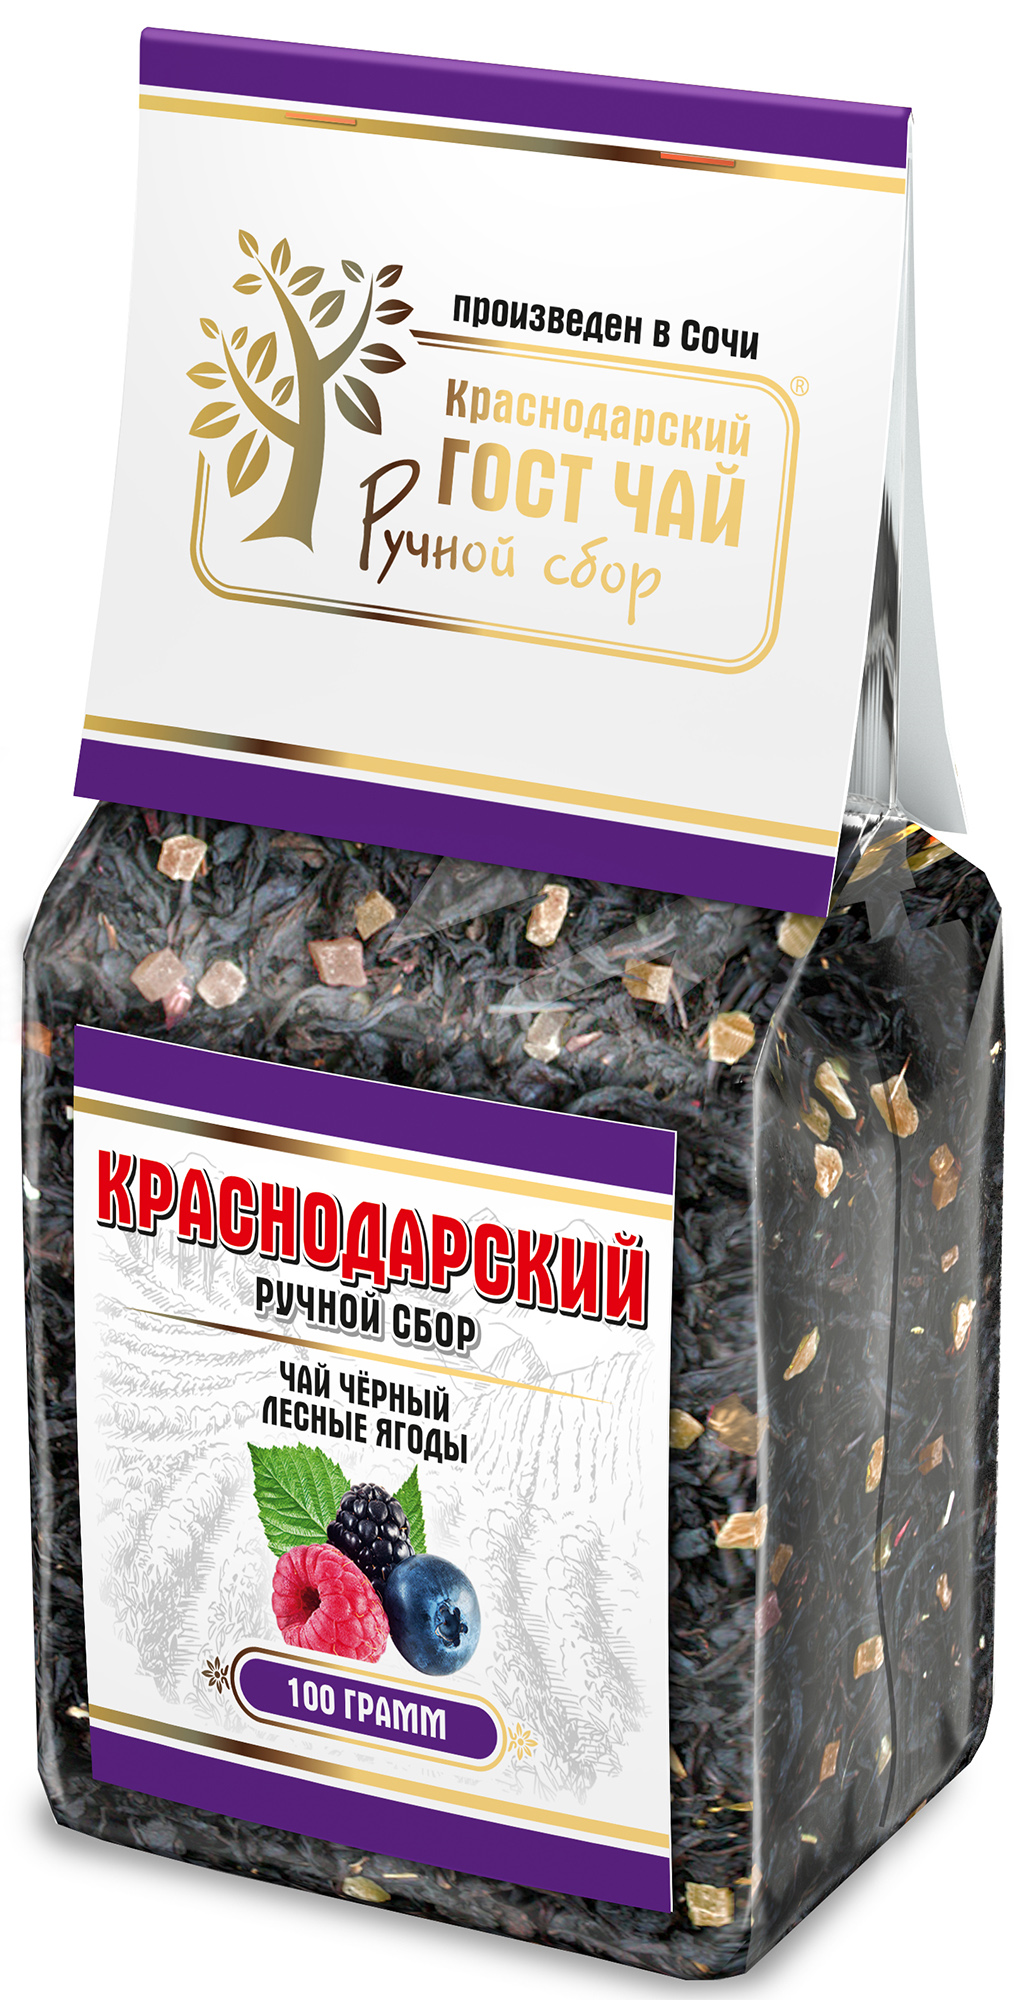 Чай черный Краснодарский ручной сбор Лесные ягоды байховый крупнолистовой 100 г